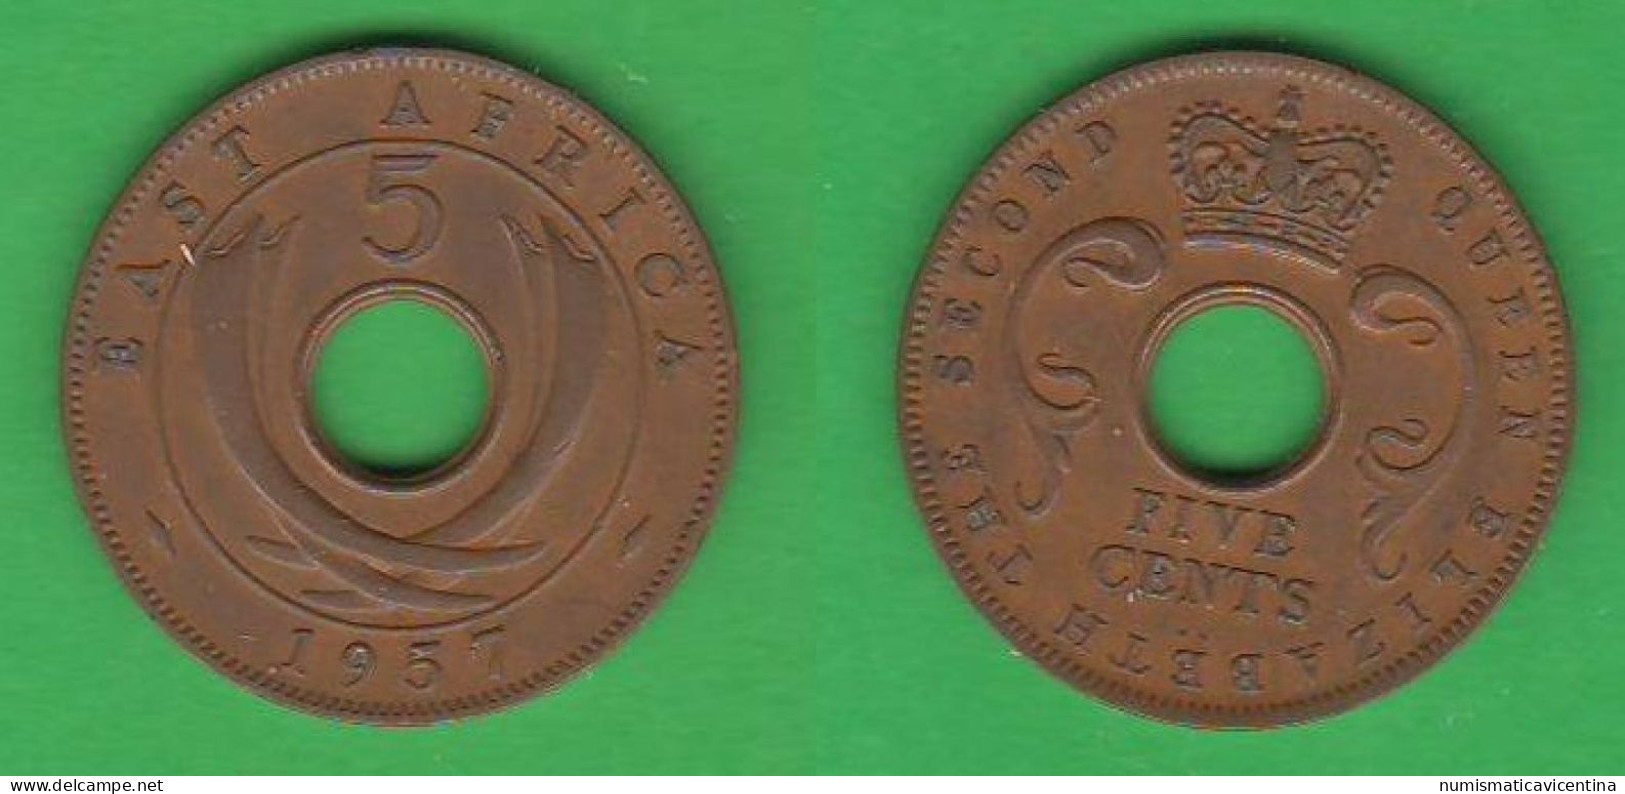 British East Africa 5 Cents 1957 KN Birmingham Mint Afrique Orientale Britannique - Colonia Britannica